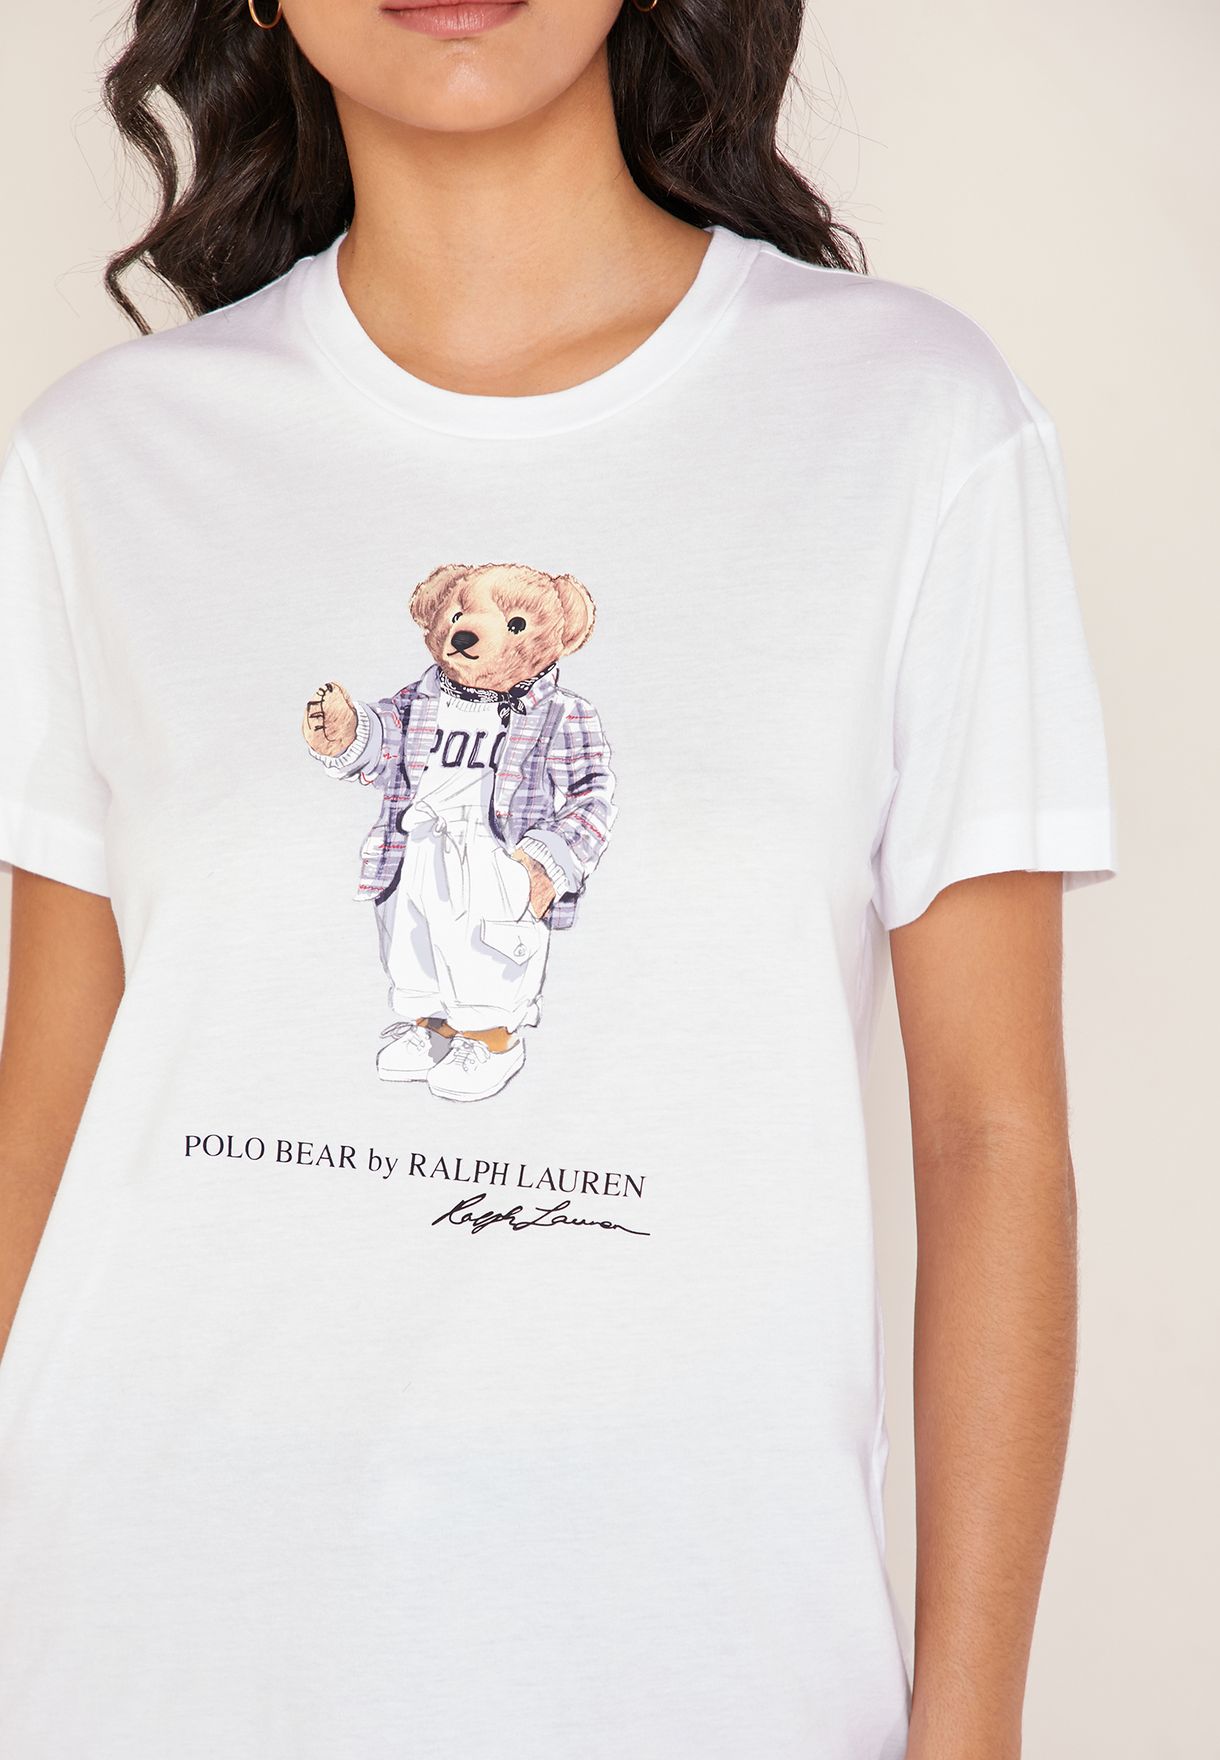 polo bear t shirt women